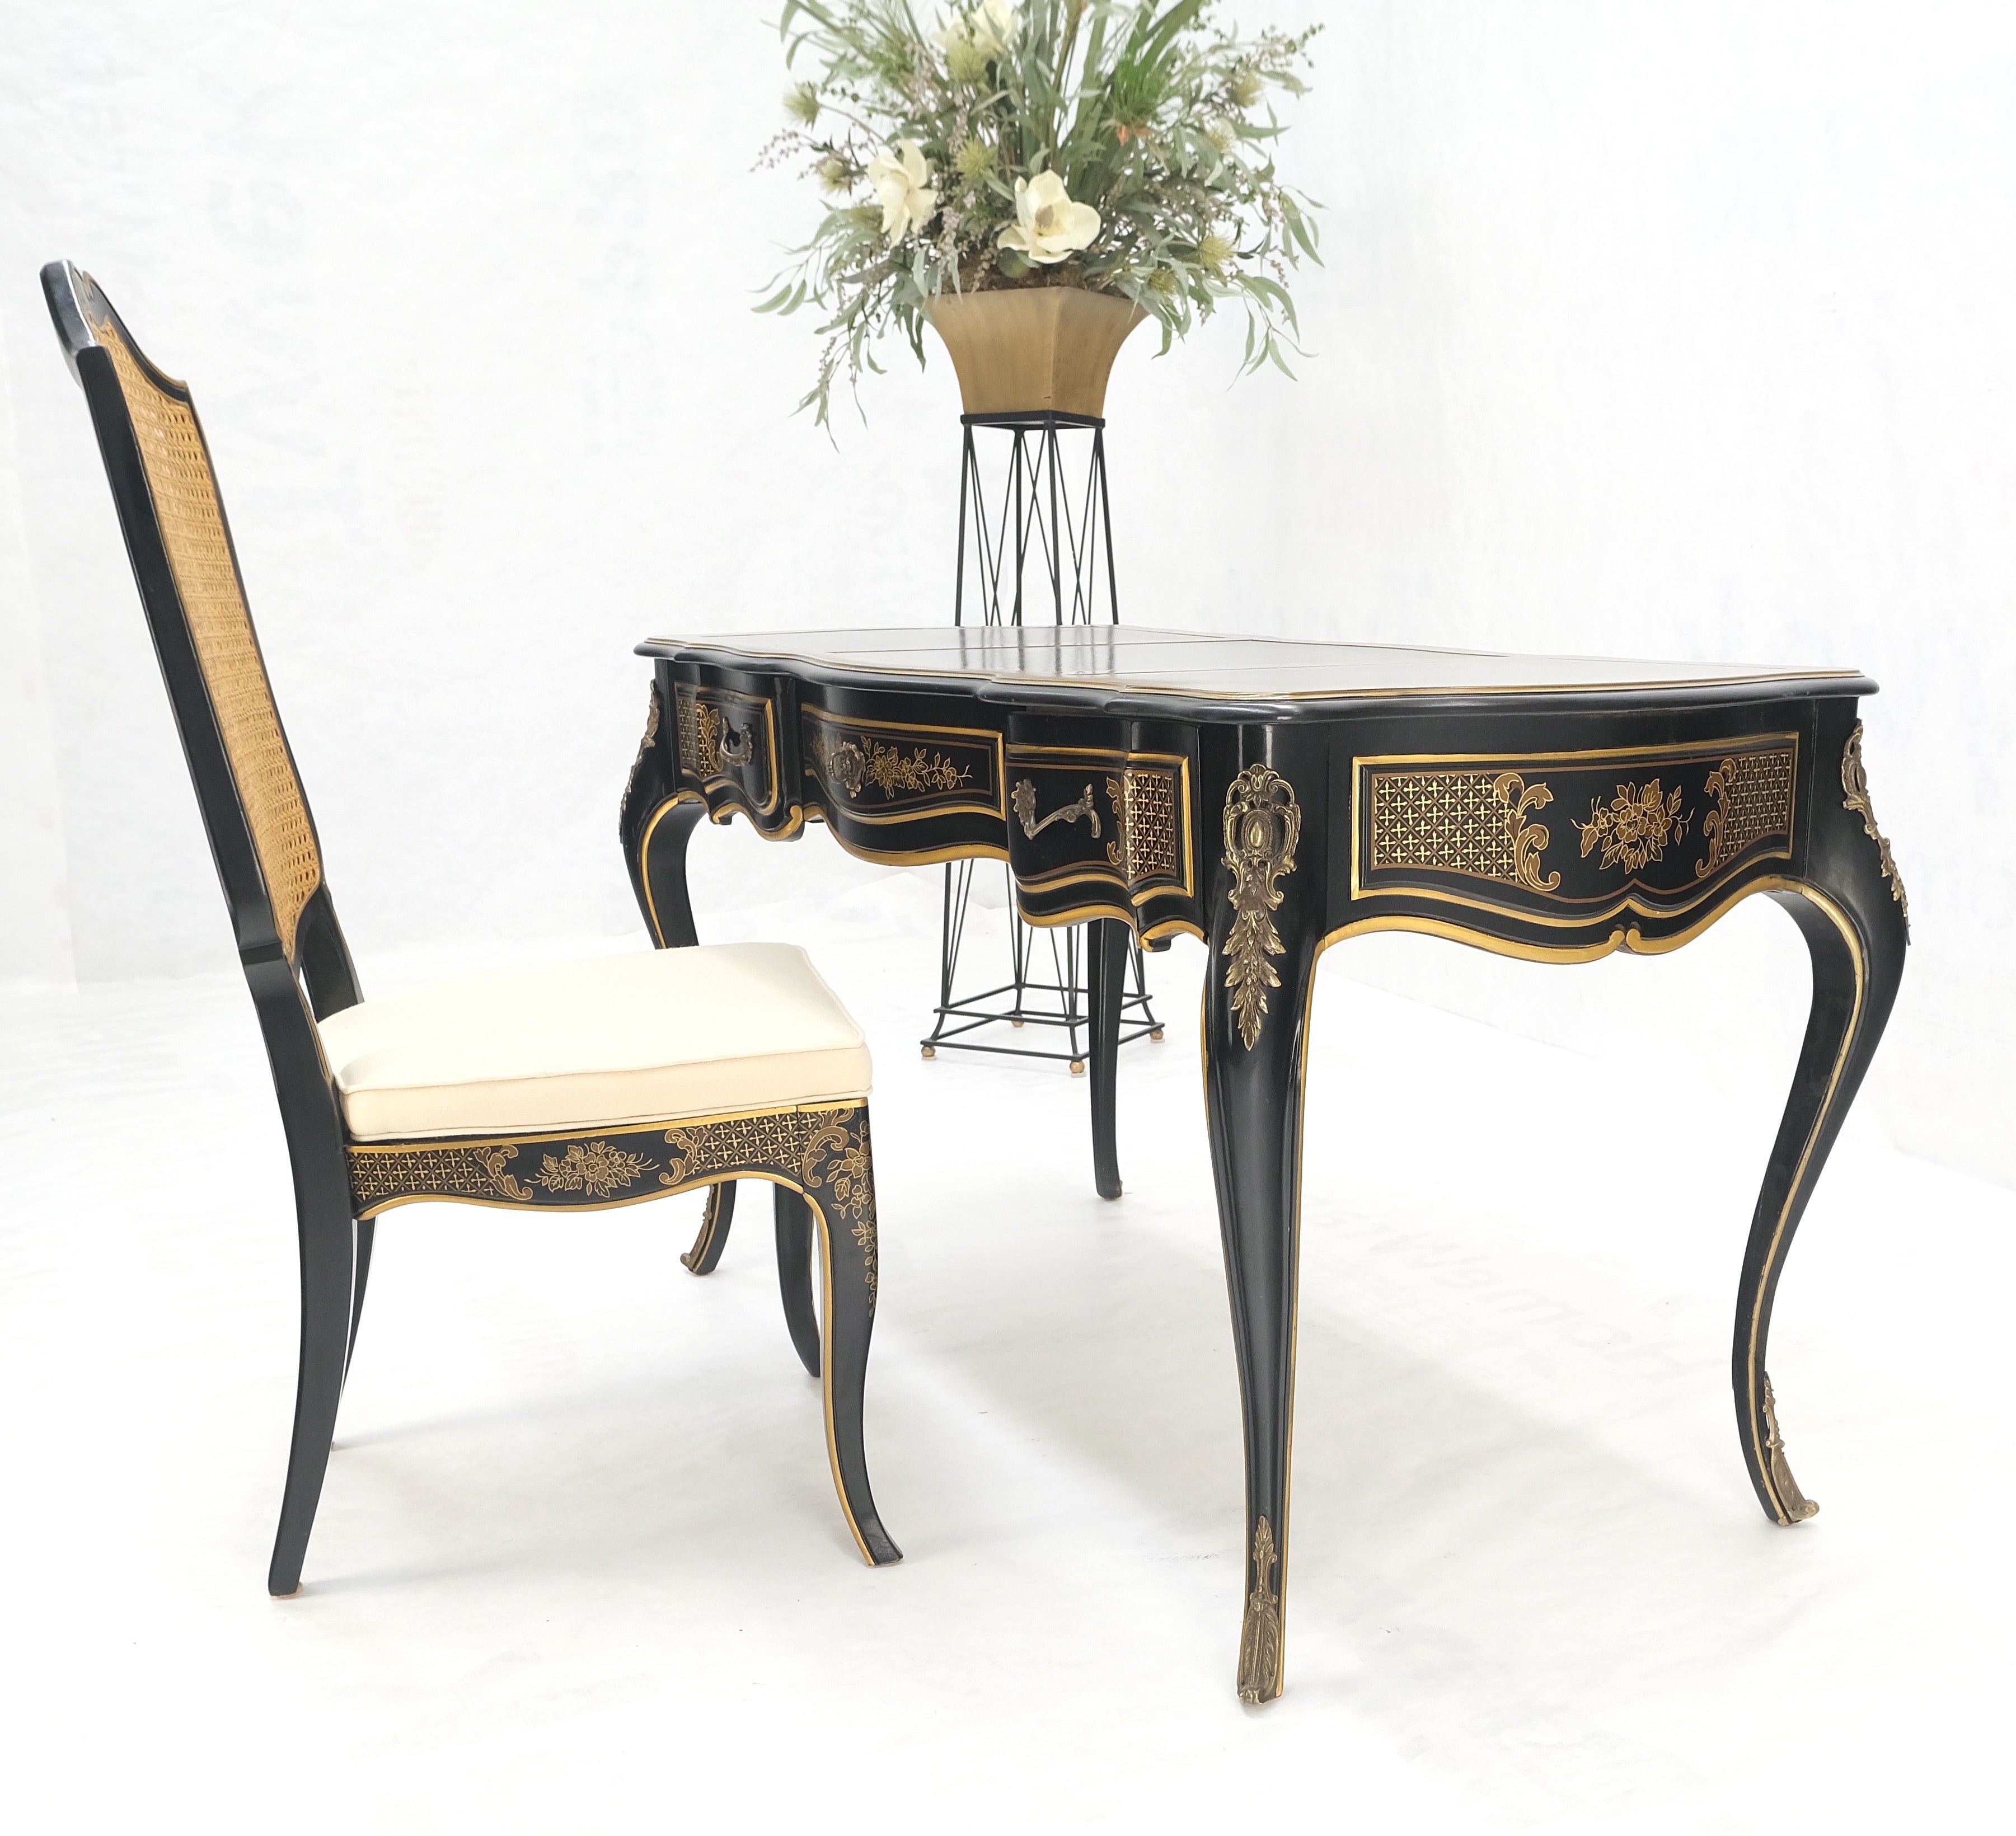 Bureau chinoiseries en laque noire, cuir doré et bronze avec chaise MINT !
table : 26x56x30
chaise : 21 x19x42, siège : 18